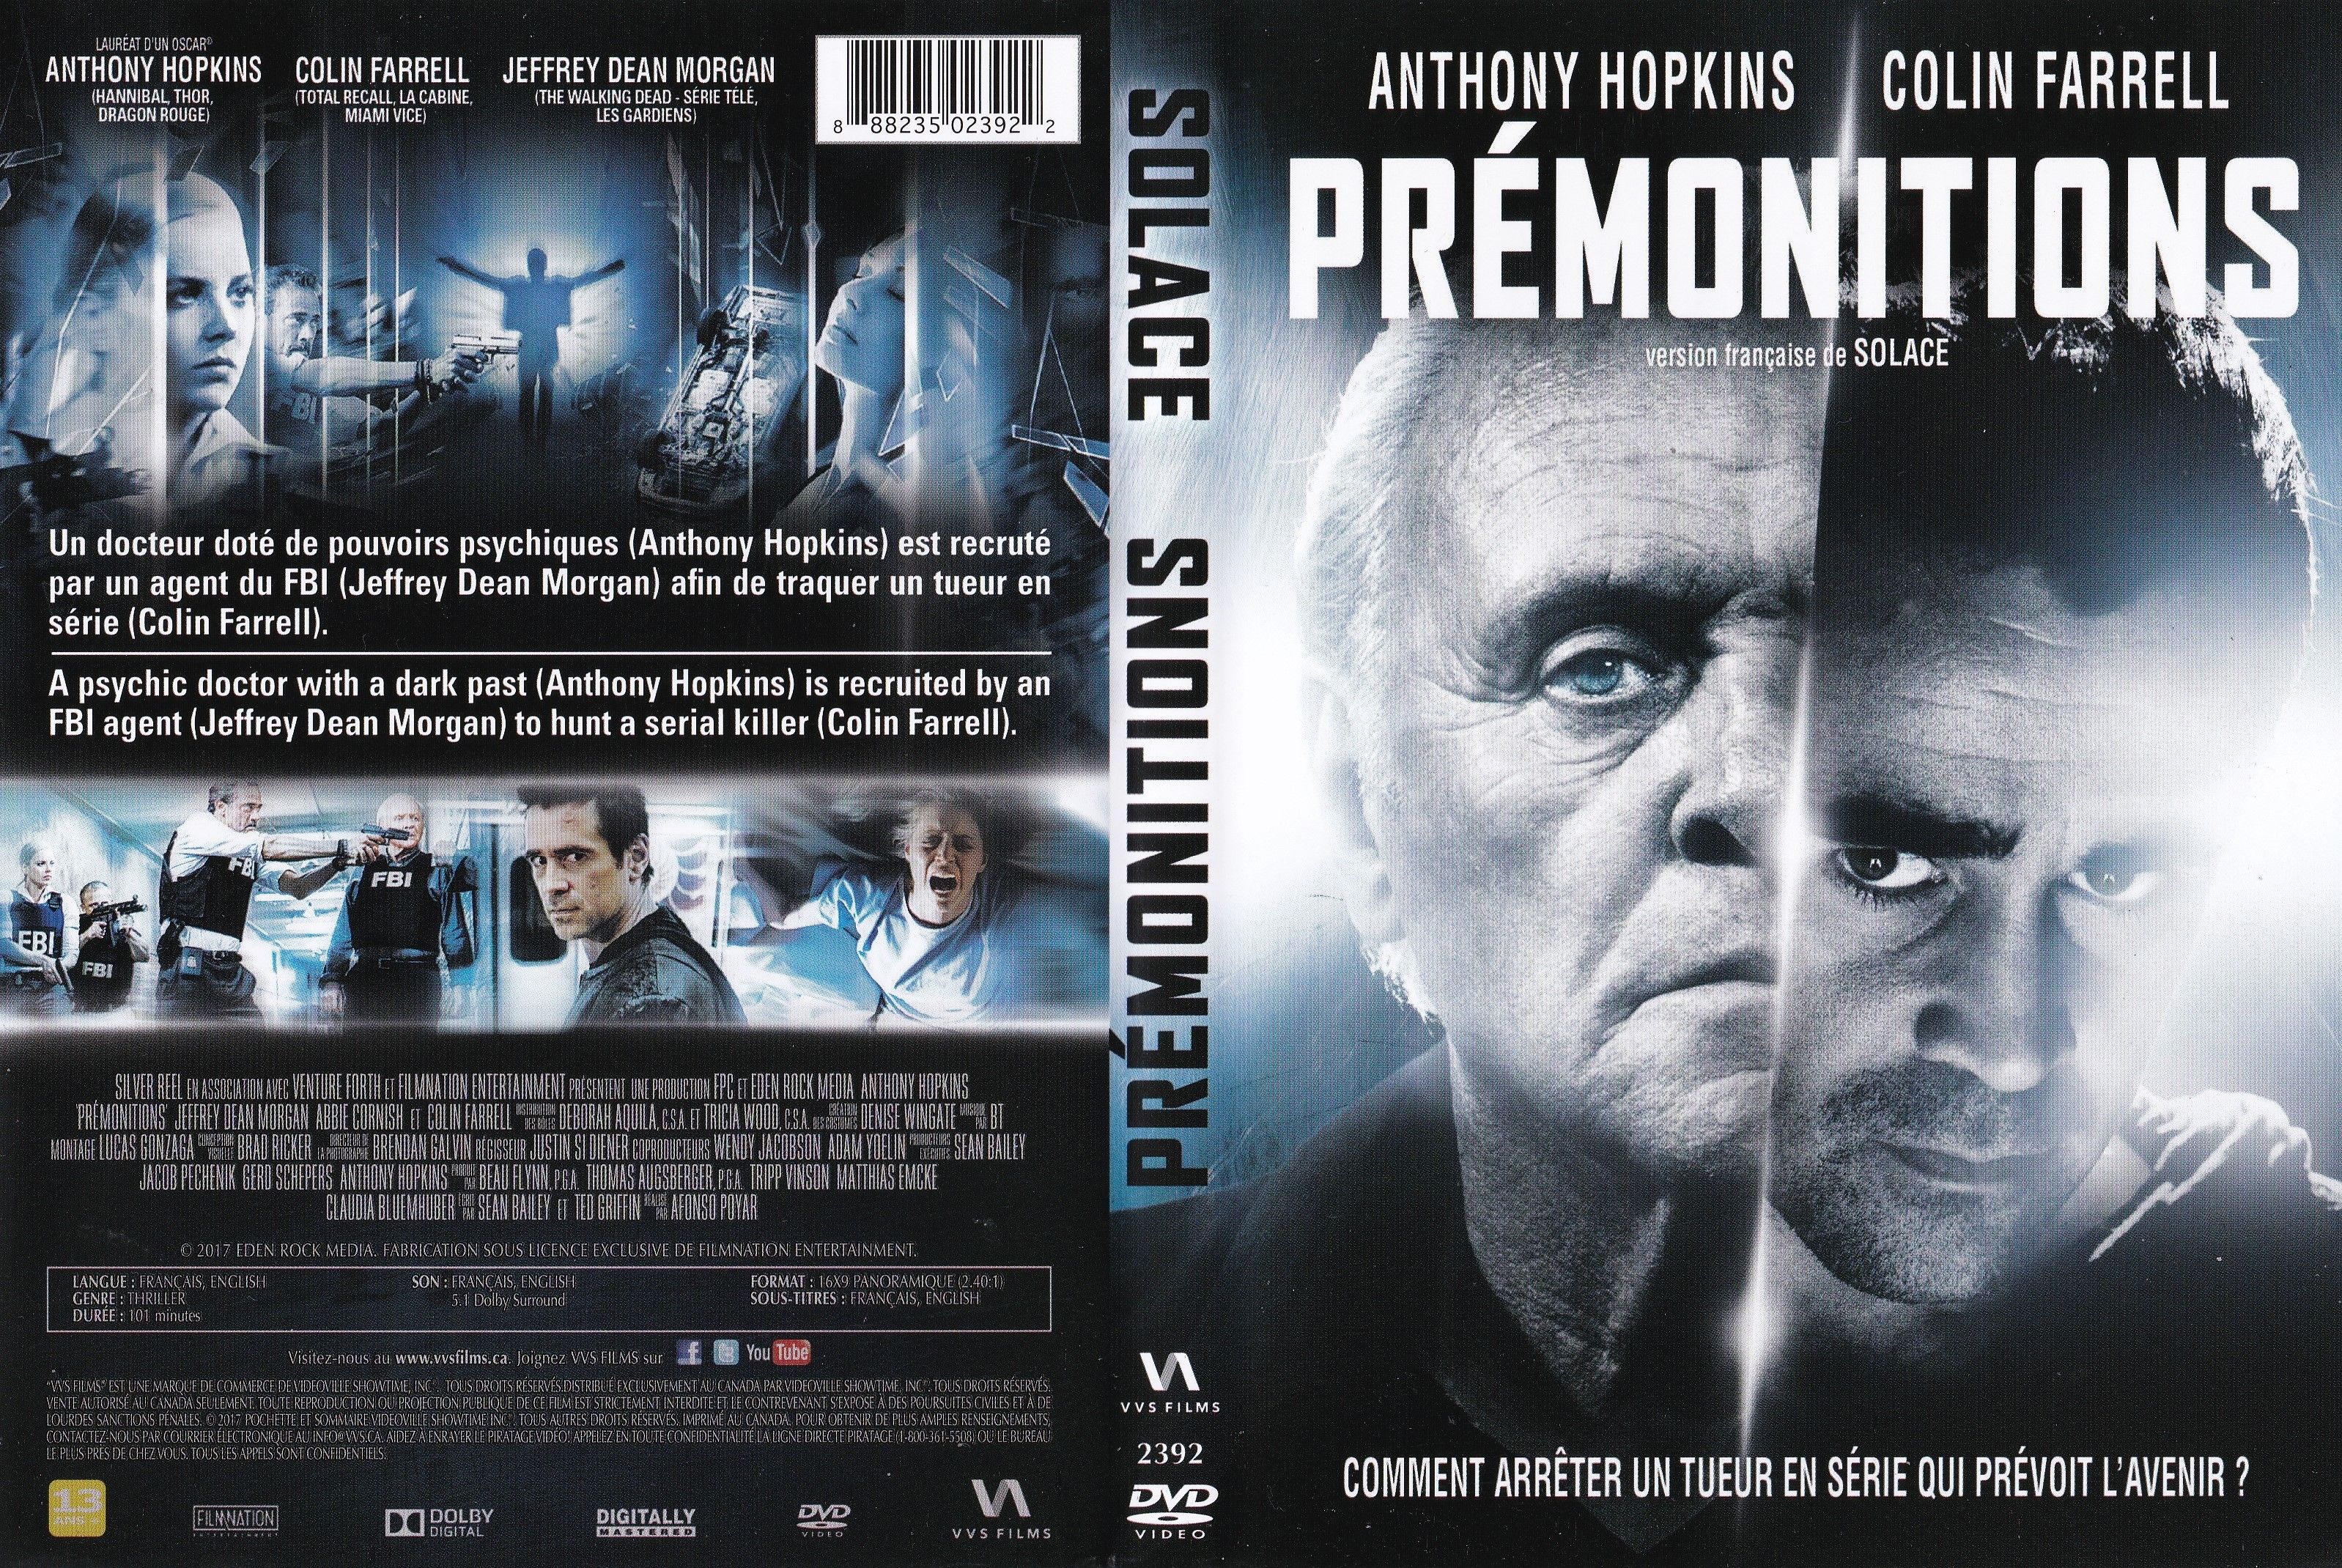 Jaquette DVD Premonitions - Solace (canadienne)